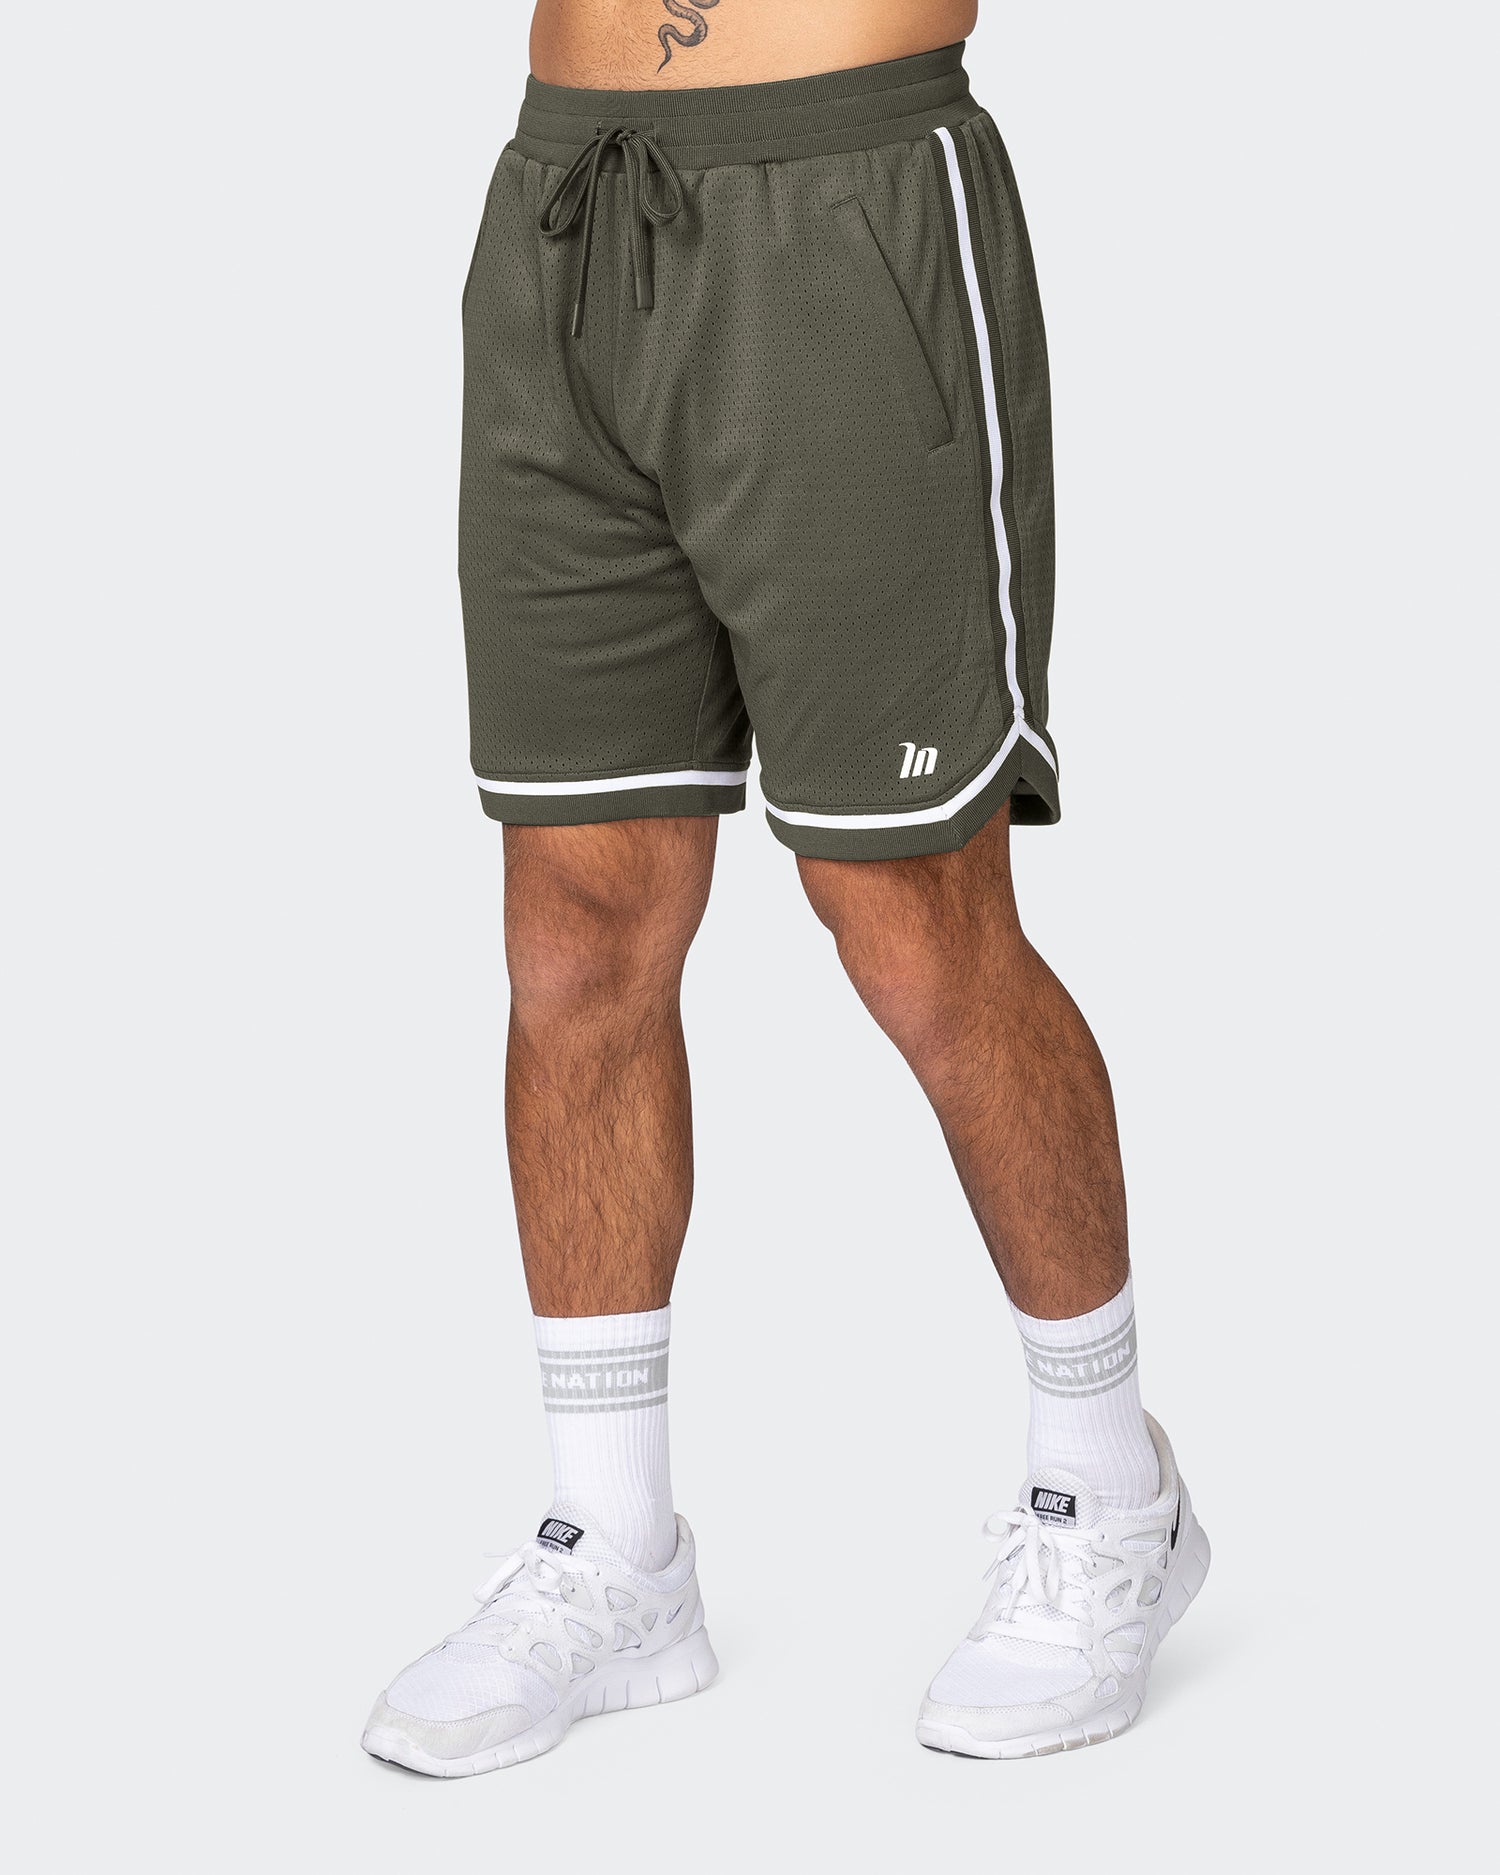 Mens 8" Basketball Shorts - Dark Khaki